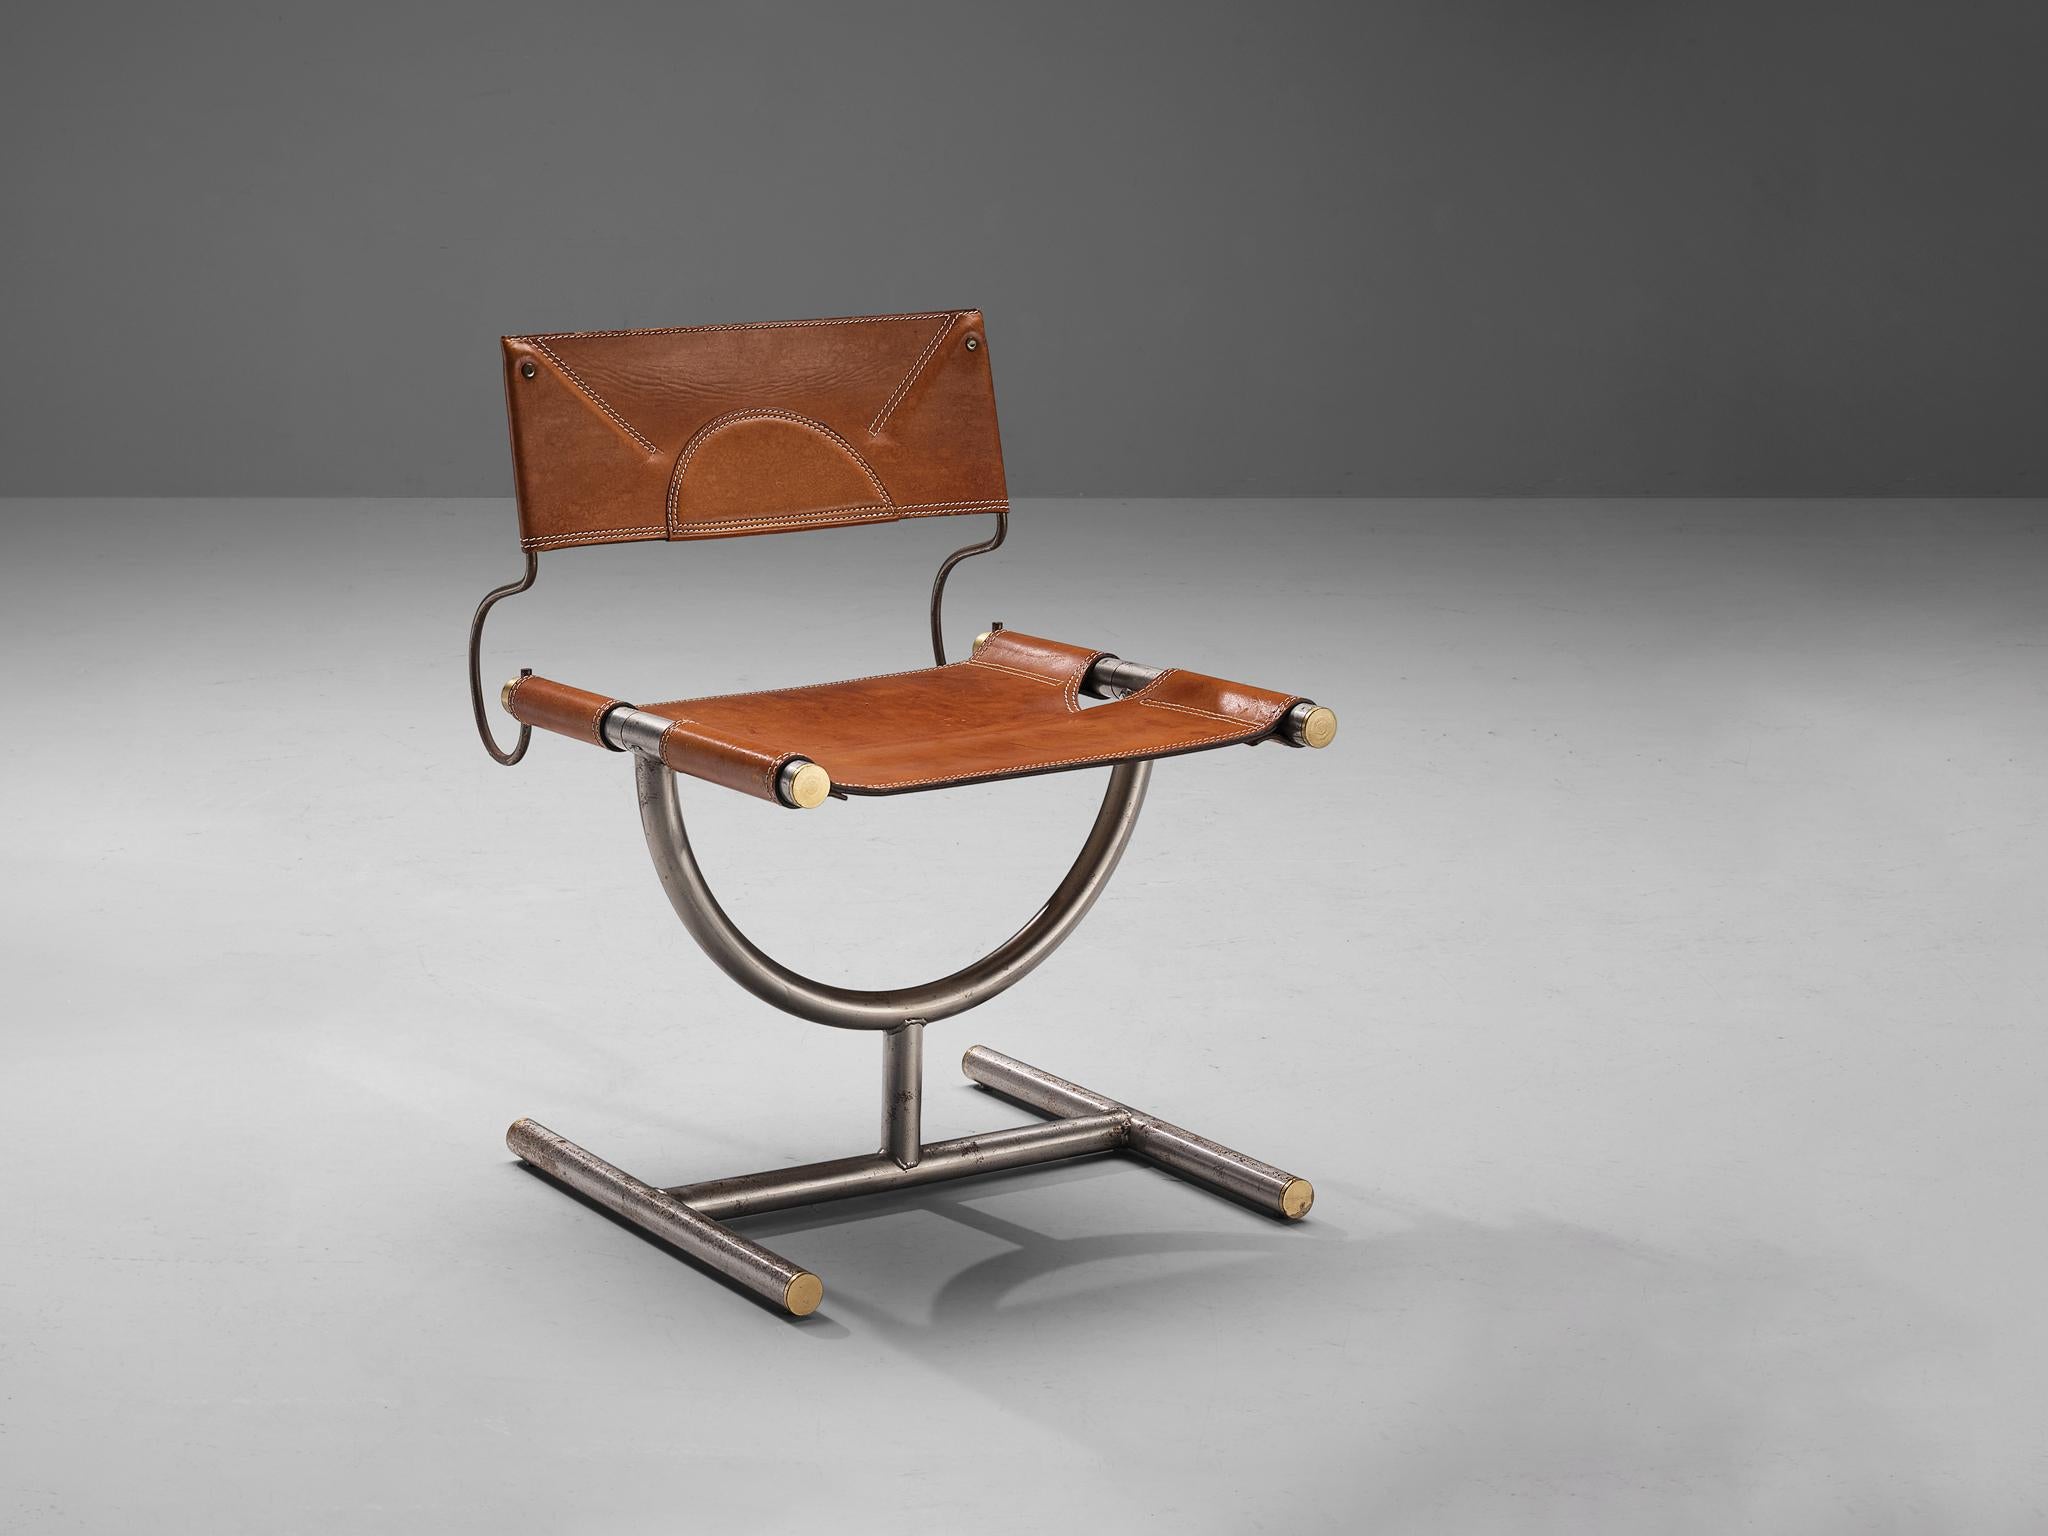 Afra & Tobia Scarpa für Benetton Office, Stuhl, Messing, Leder, Stahl, Italien, 1985.

Dieser Stuhl wurde von Afra & Tobia Scarpa für das Büro der Bekleidungsmarke Benetton entworfen. Dieser Stuhl ist aus cognacfarbenem Originalleder und Stahlrohr